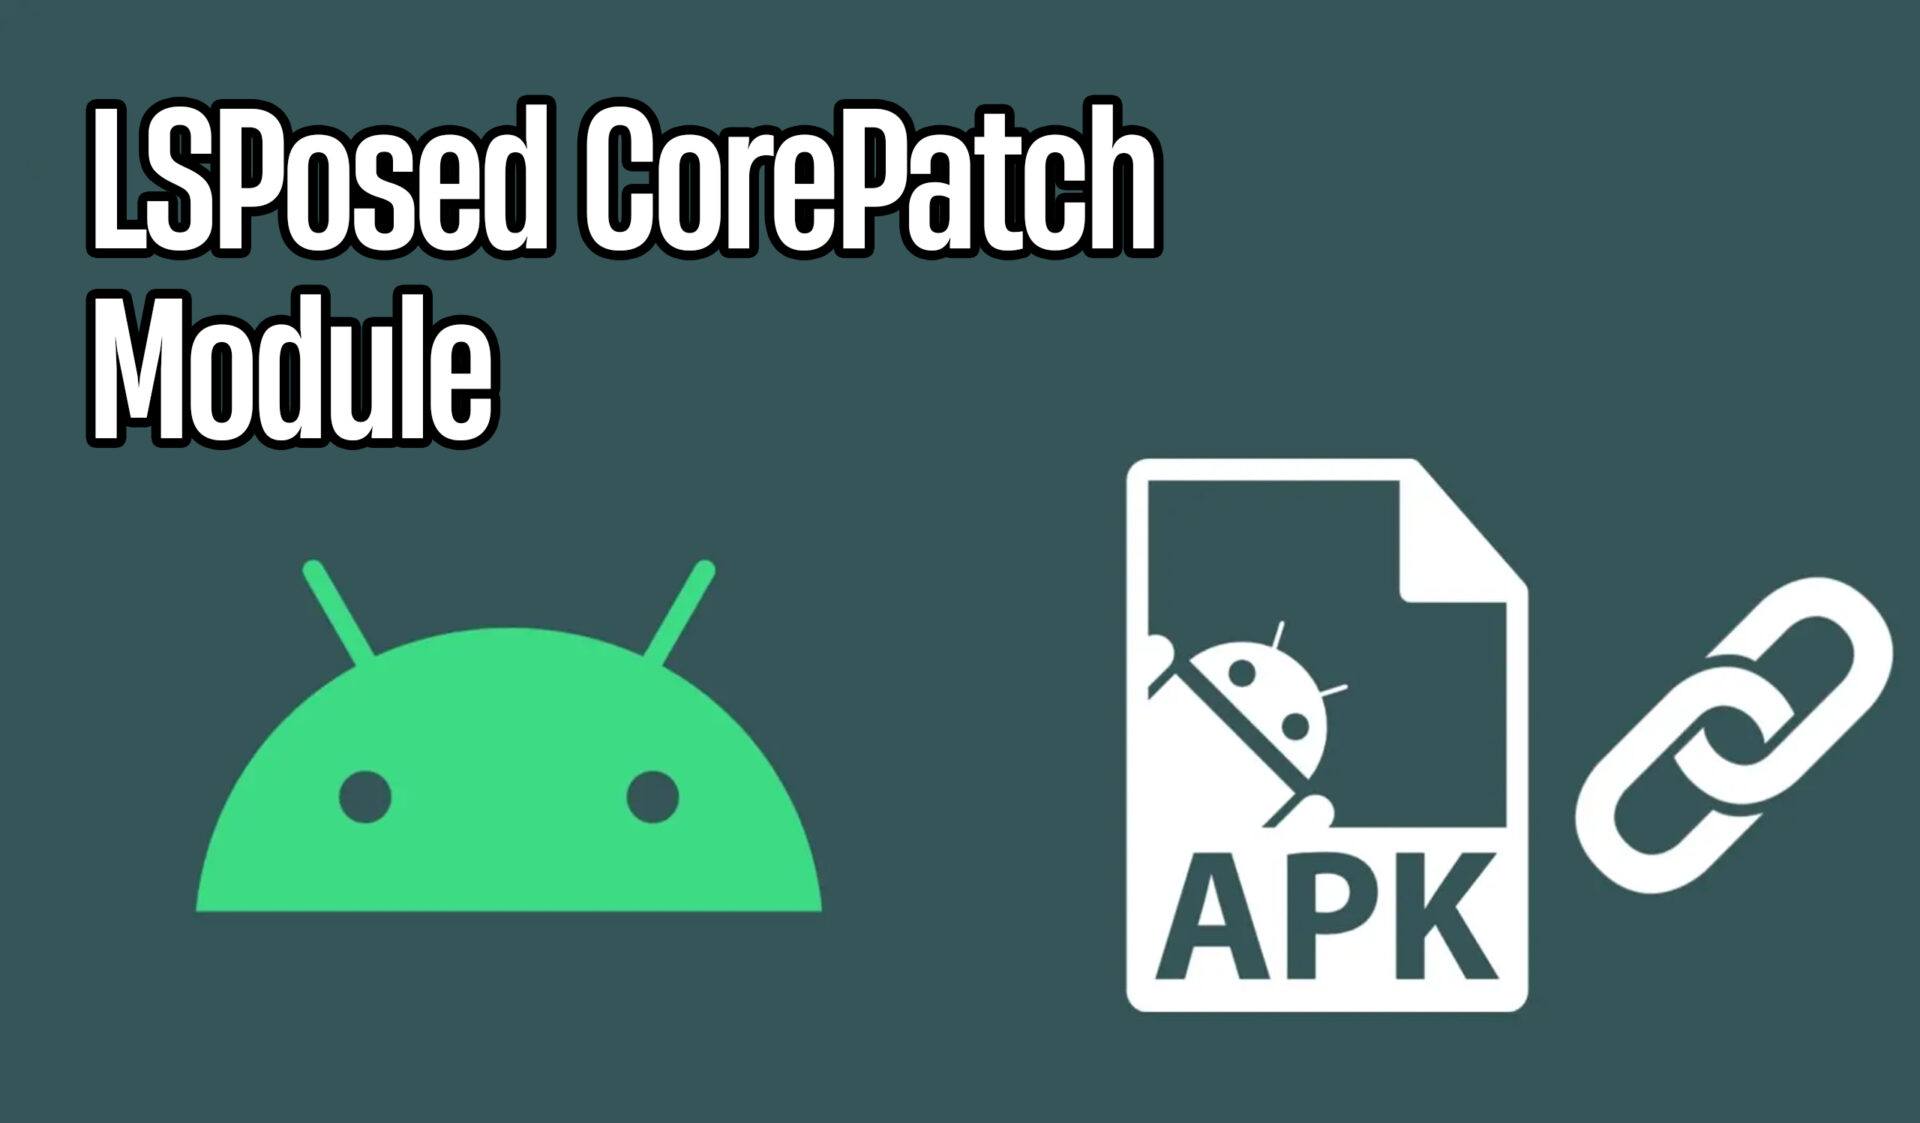 LSPosed CorePatch Module Disable APK signature verification